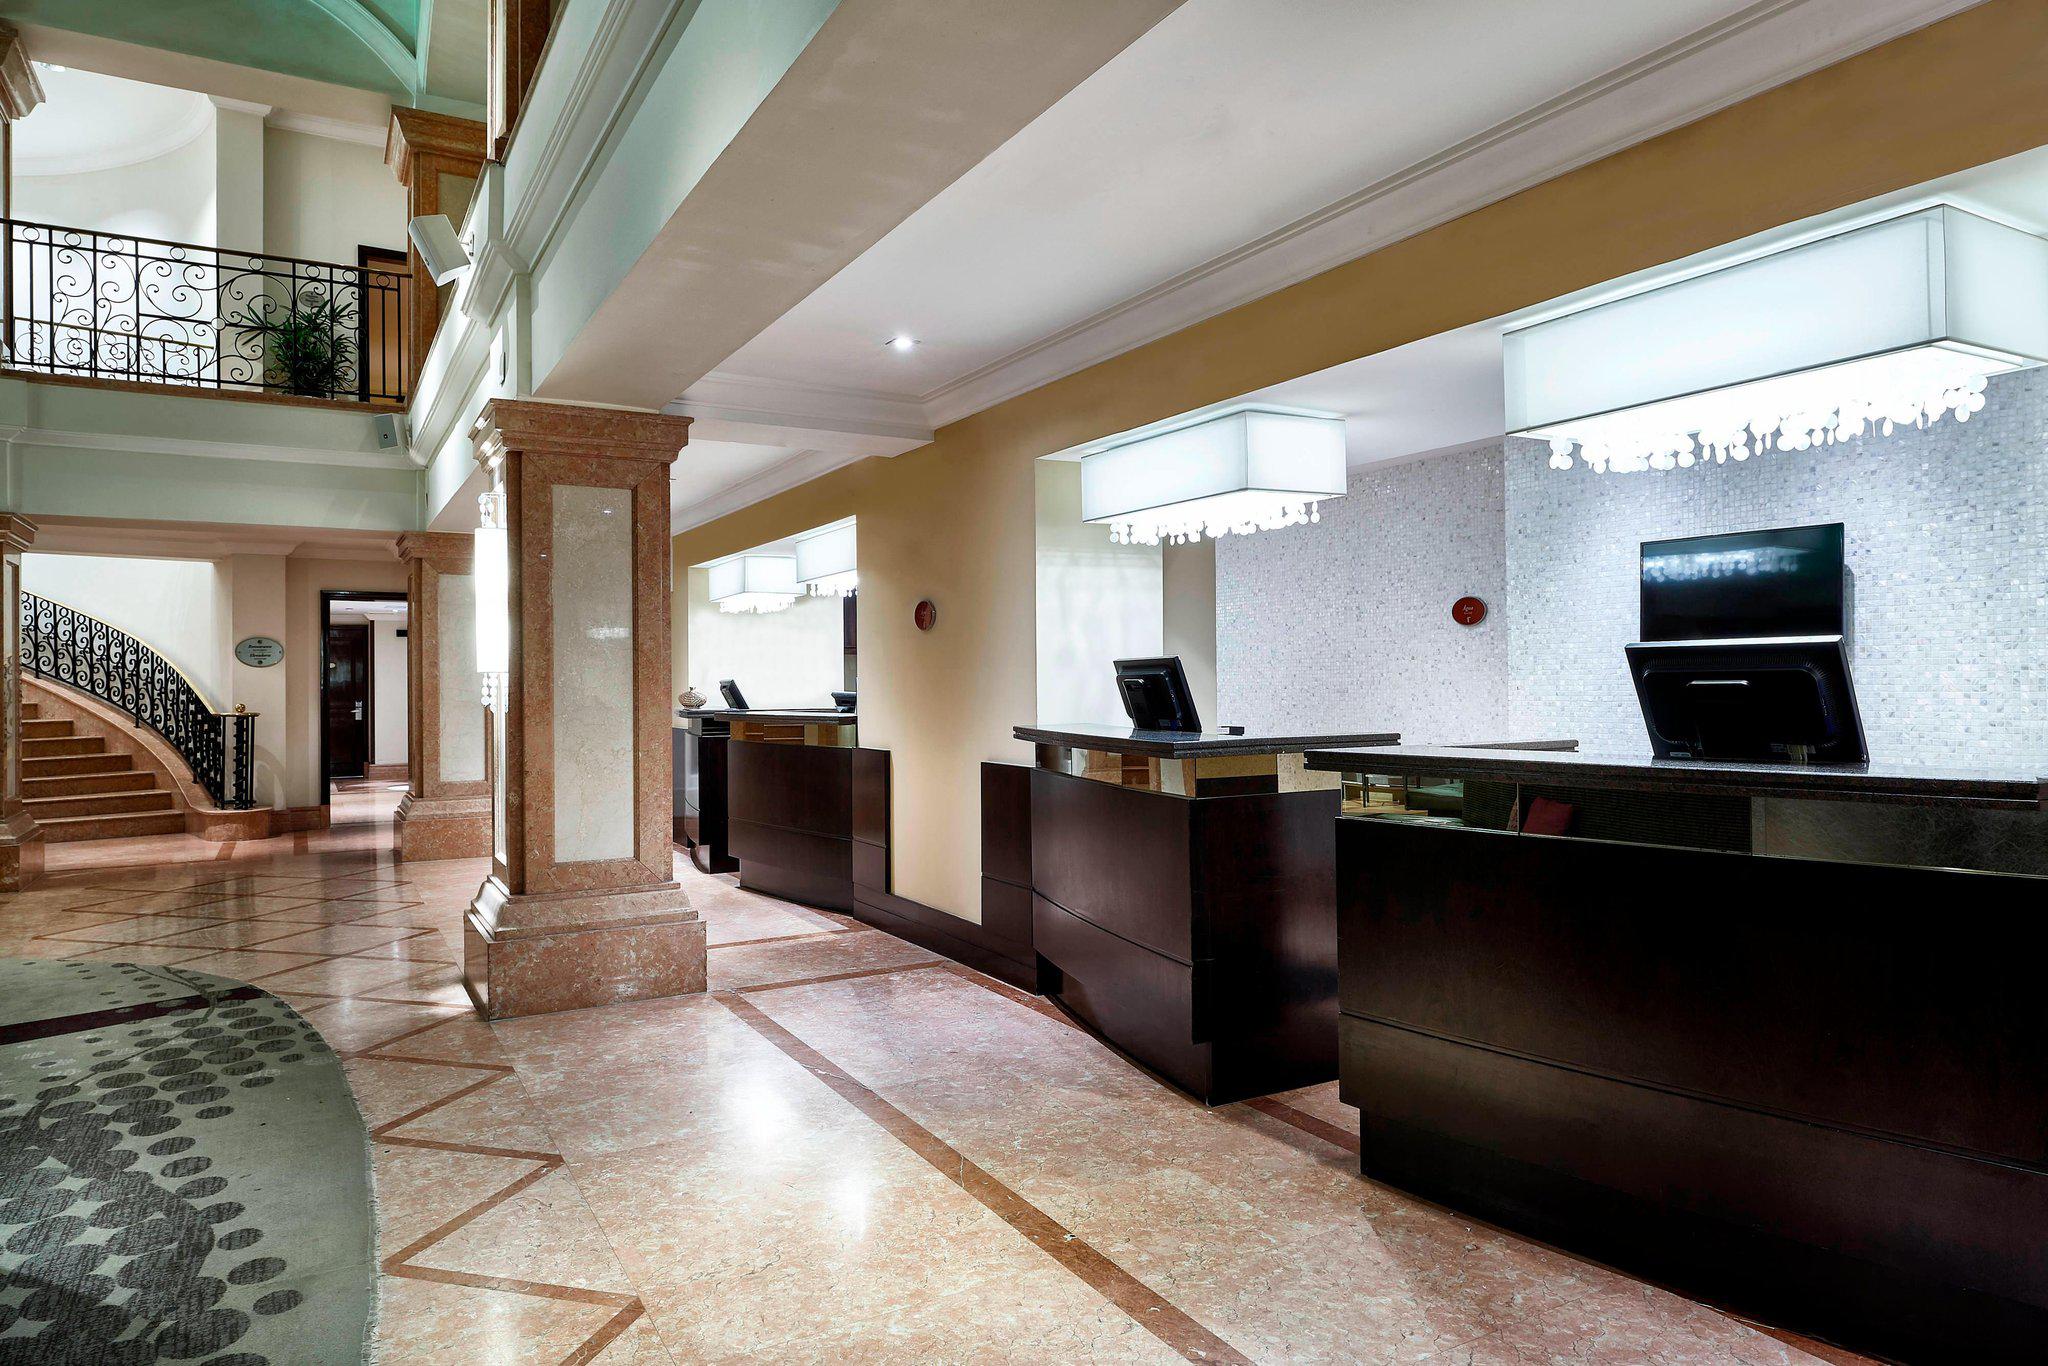 JW Marriott Hotel Rio de Janeiro